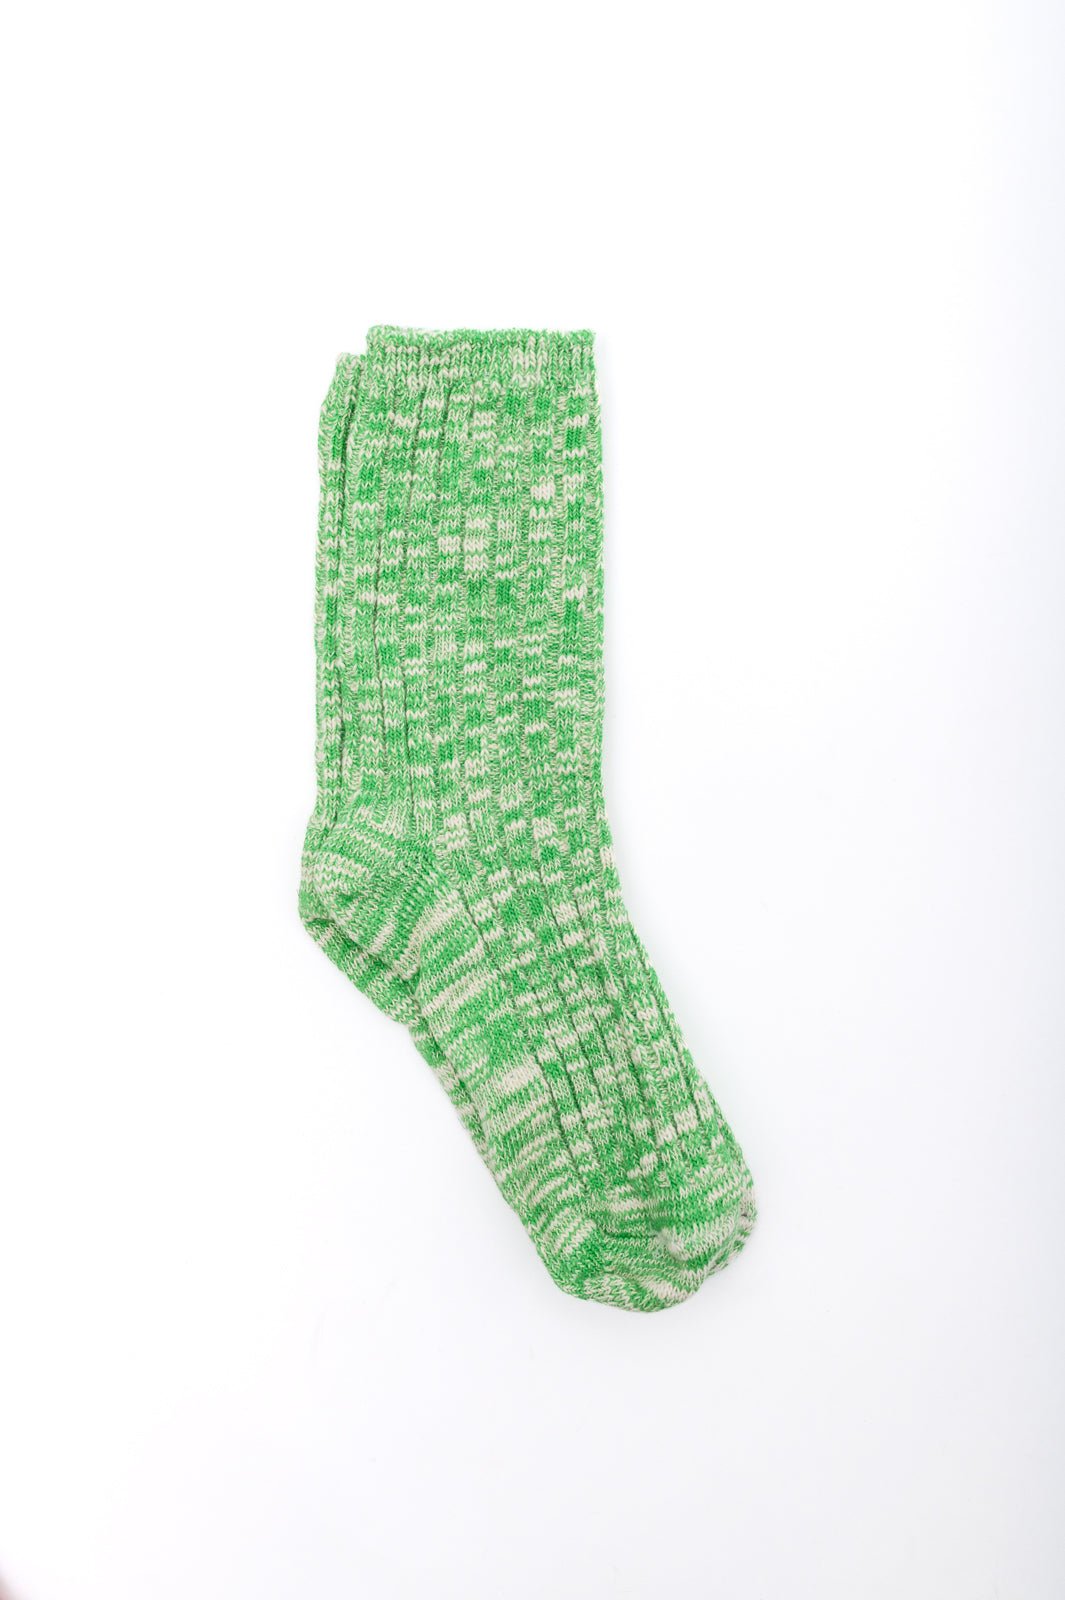 Sweet Socks Heathered Scrunch Socks - AS6285-01 - Love it Curvy